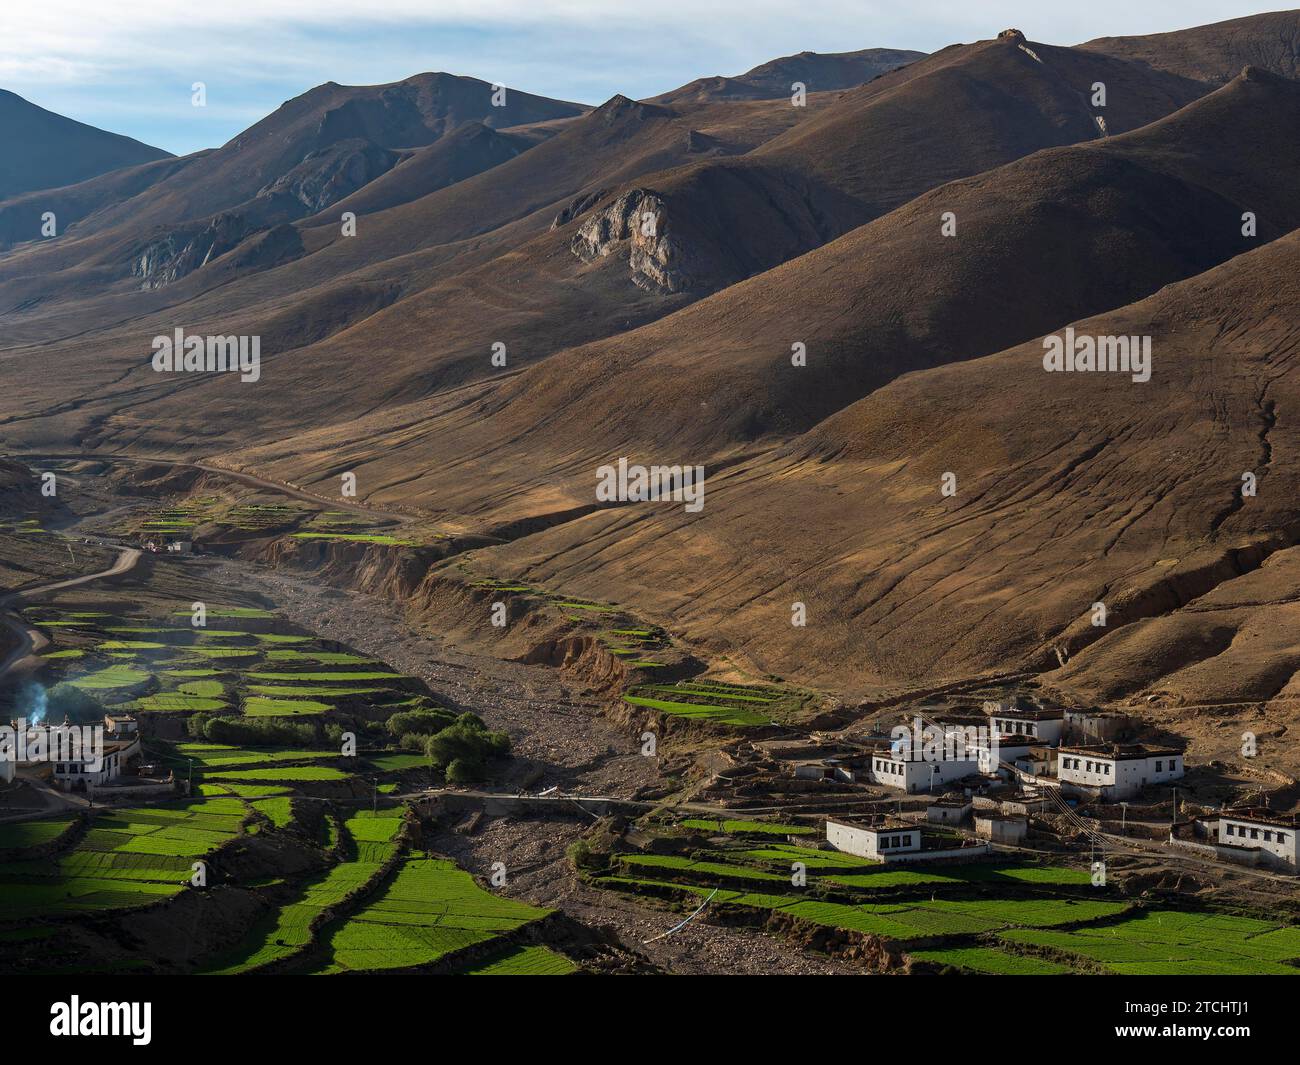 Village entre terrasses verdoyantes, culture du riz et agriculture dans les hauts plateaux du Tibet, Chine Banque D'Images